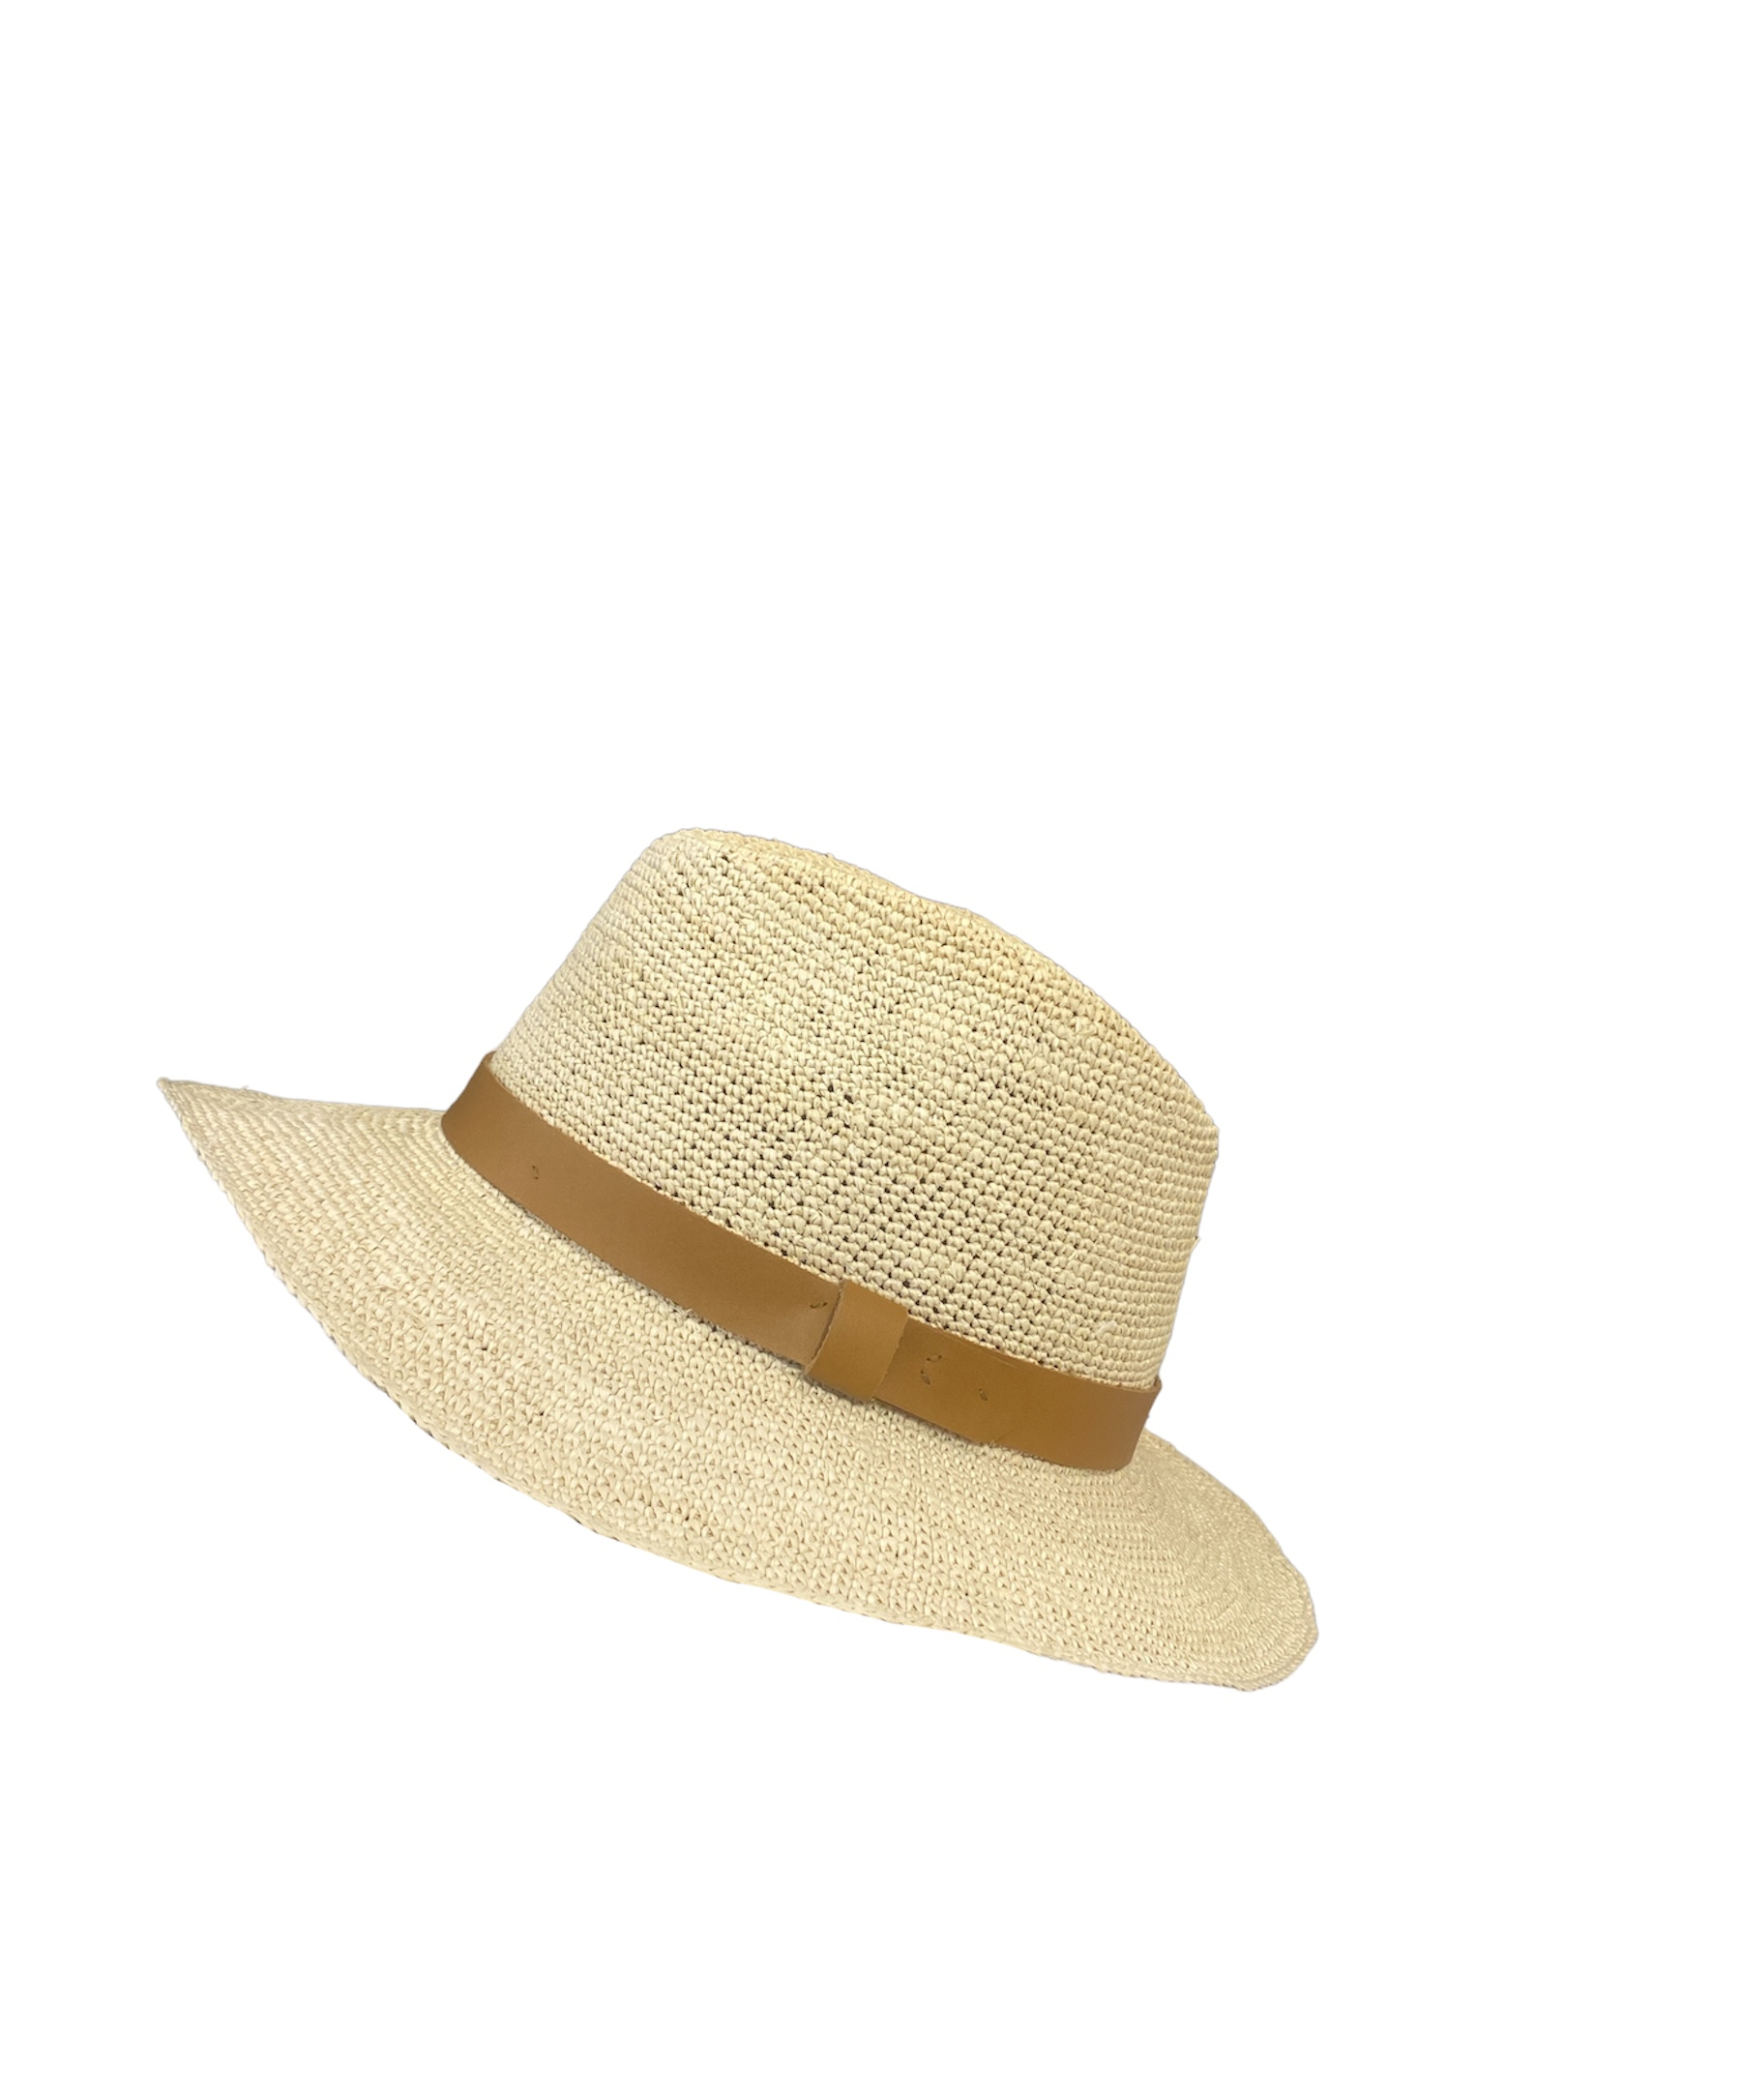 Chapeau Panama crochet avec ganse marron, disponible en taille 55, 57, 59 et 61